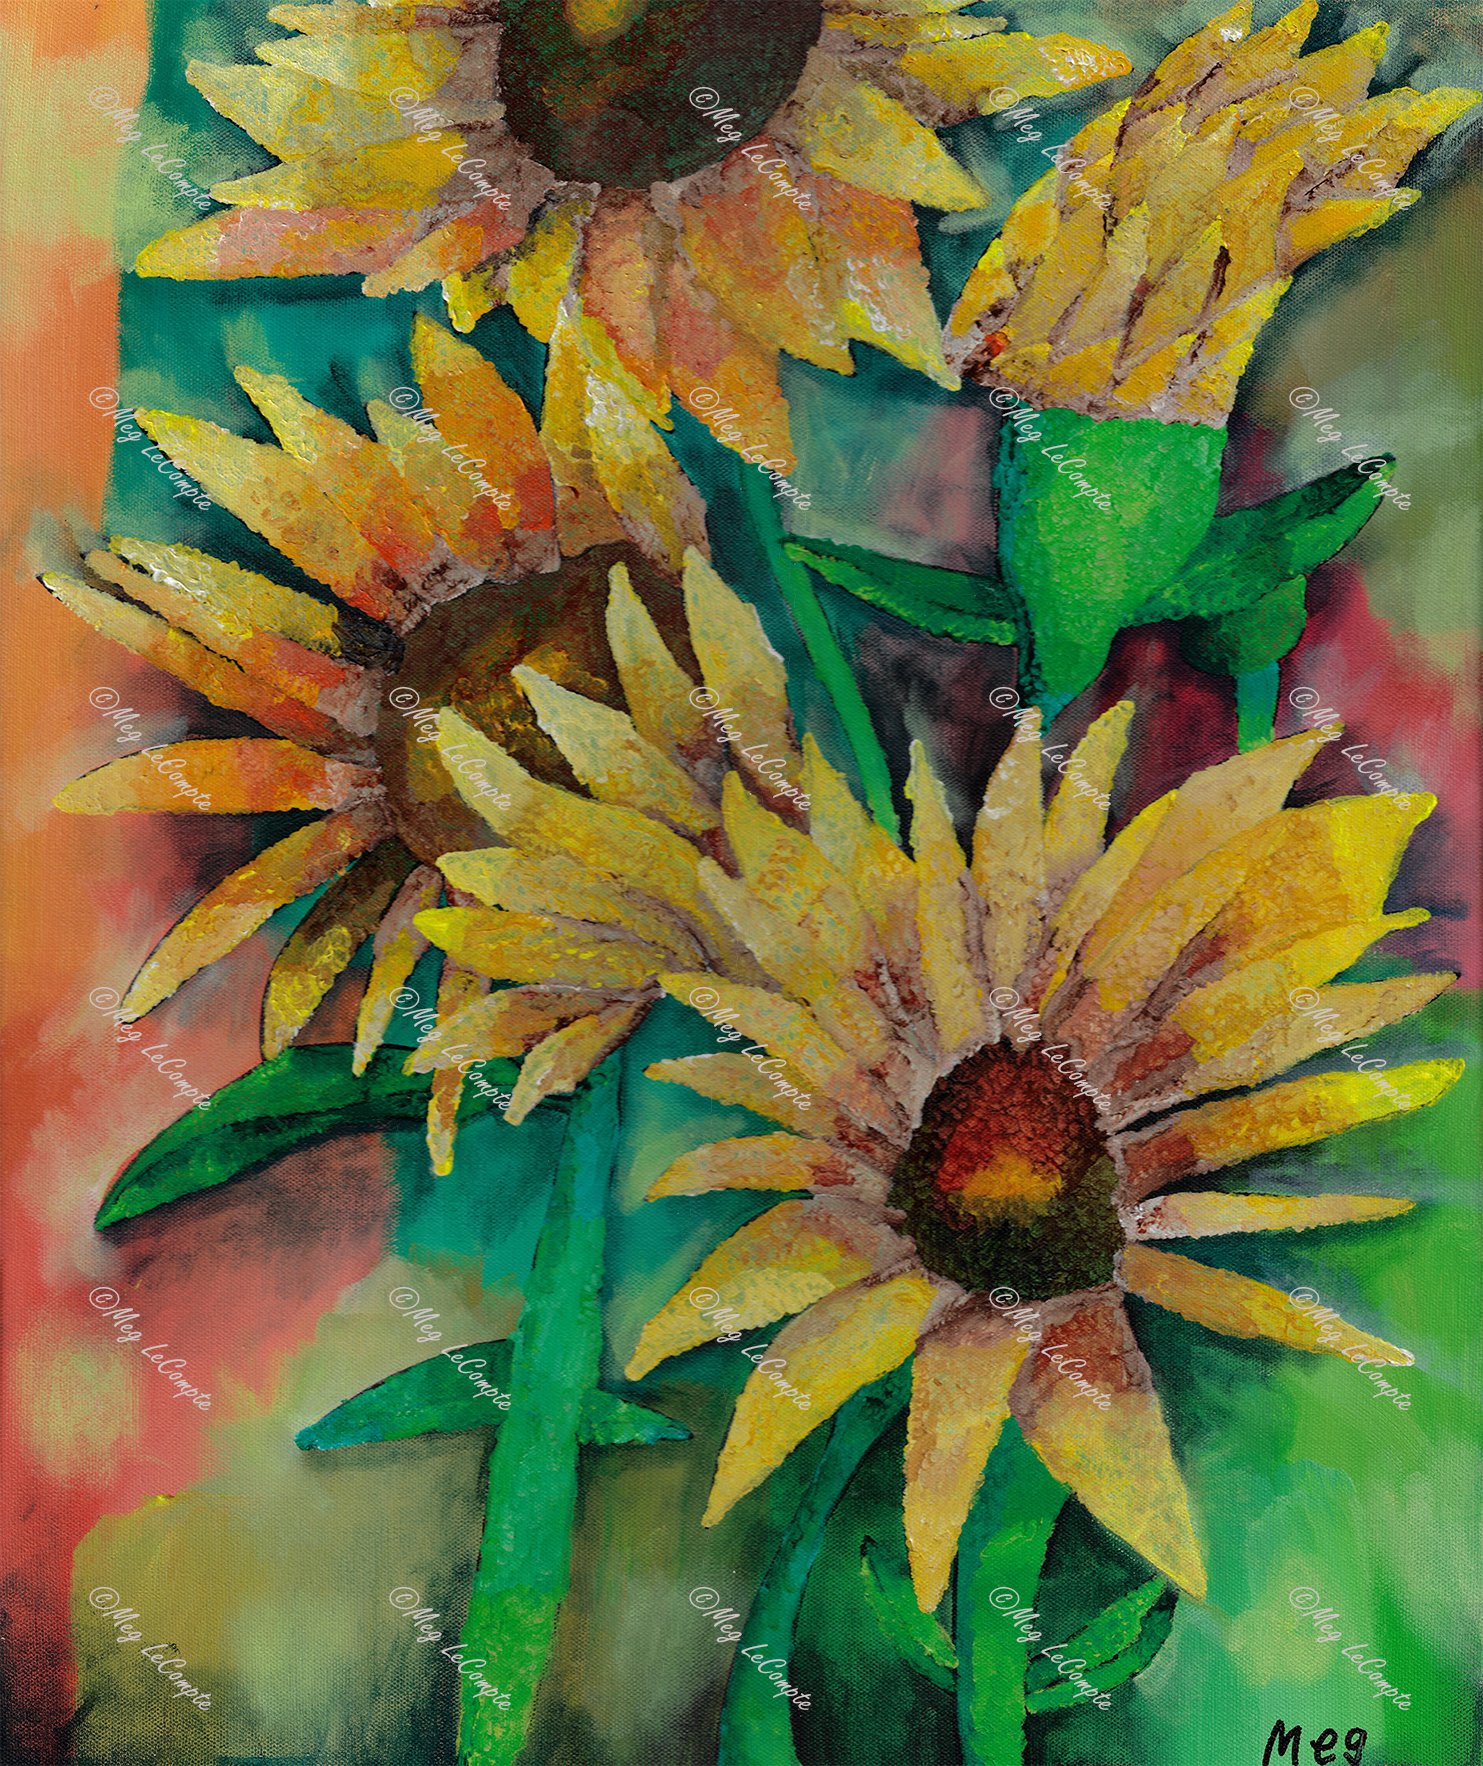 Yellow Sunflowers with Green Stems.watermark.jpg